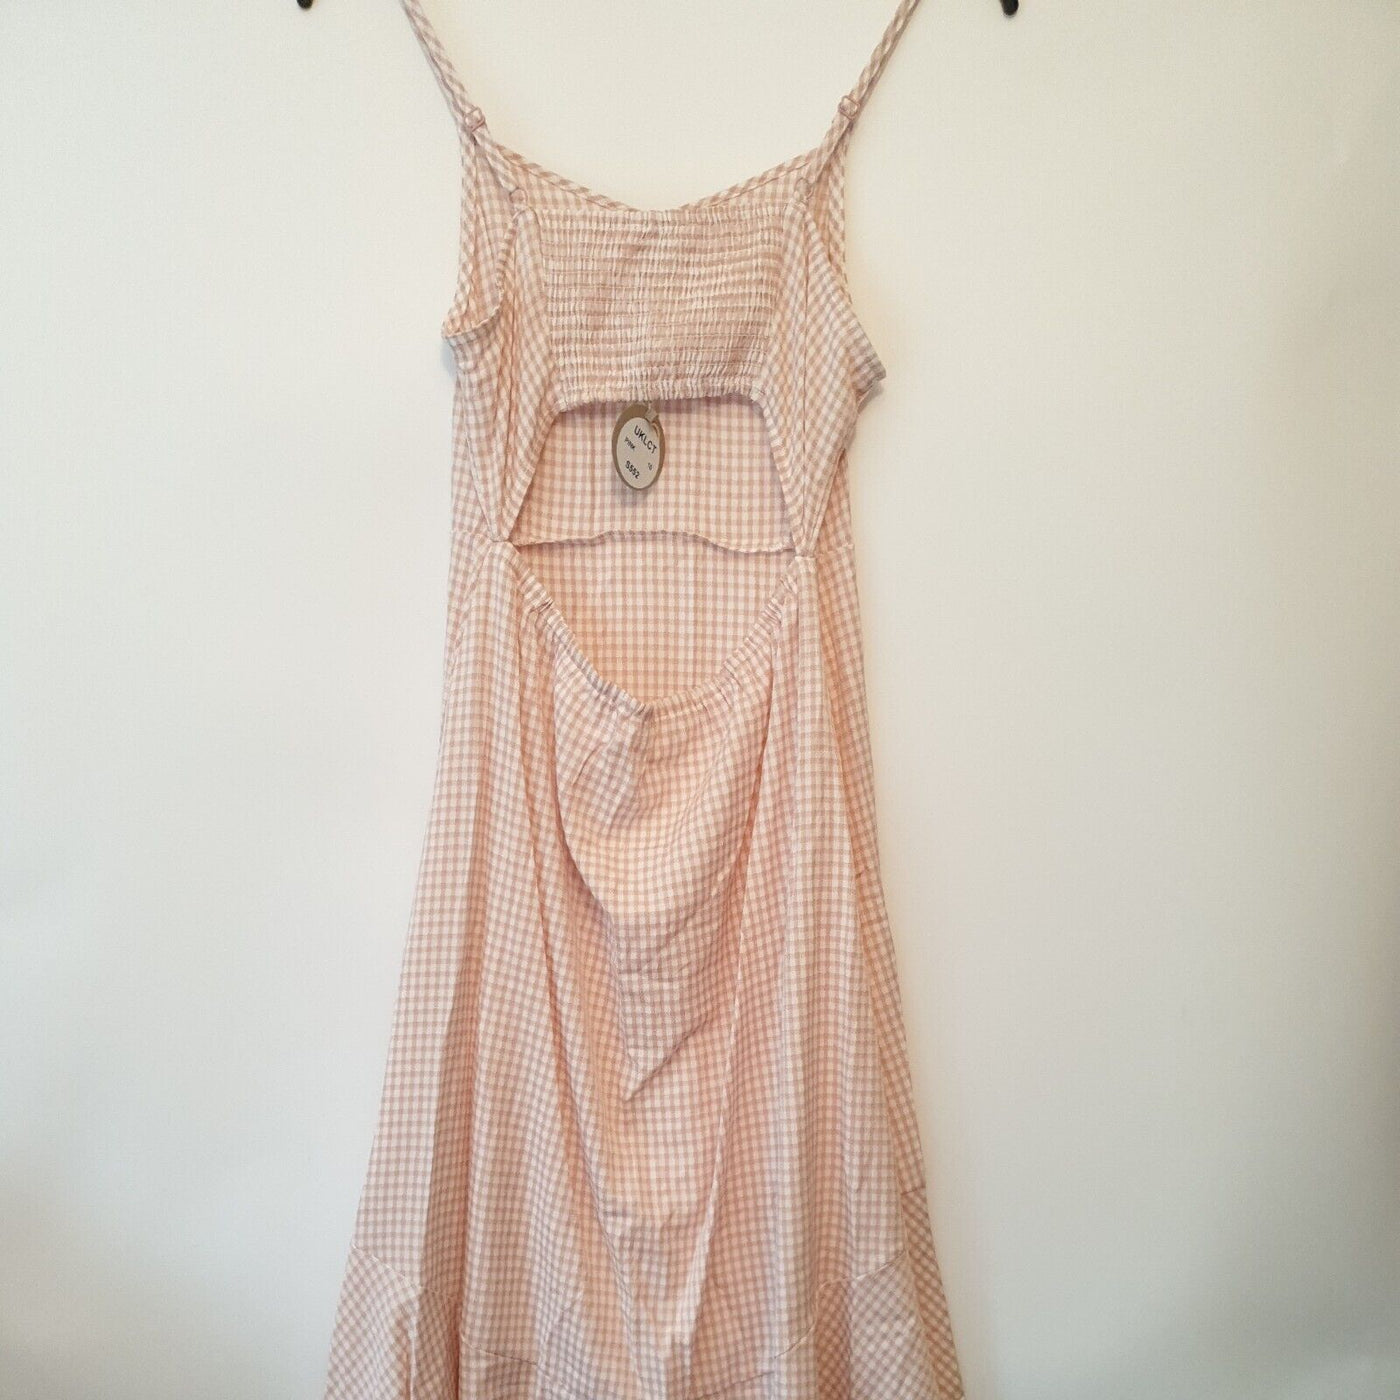 Apricot Gingham Pink High Low Hem Dress. Open Back. Size 14 ****V139